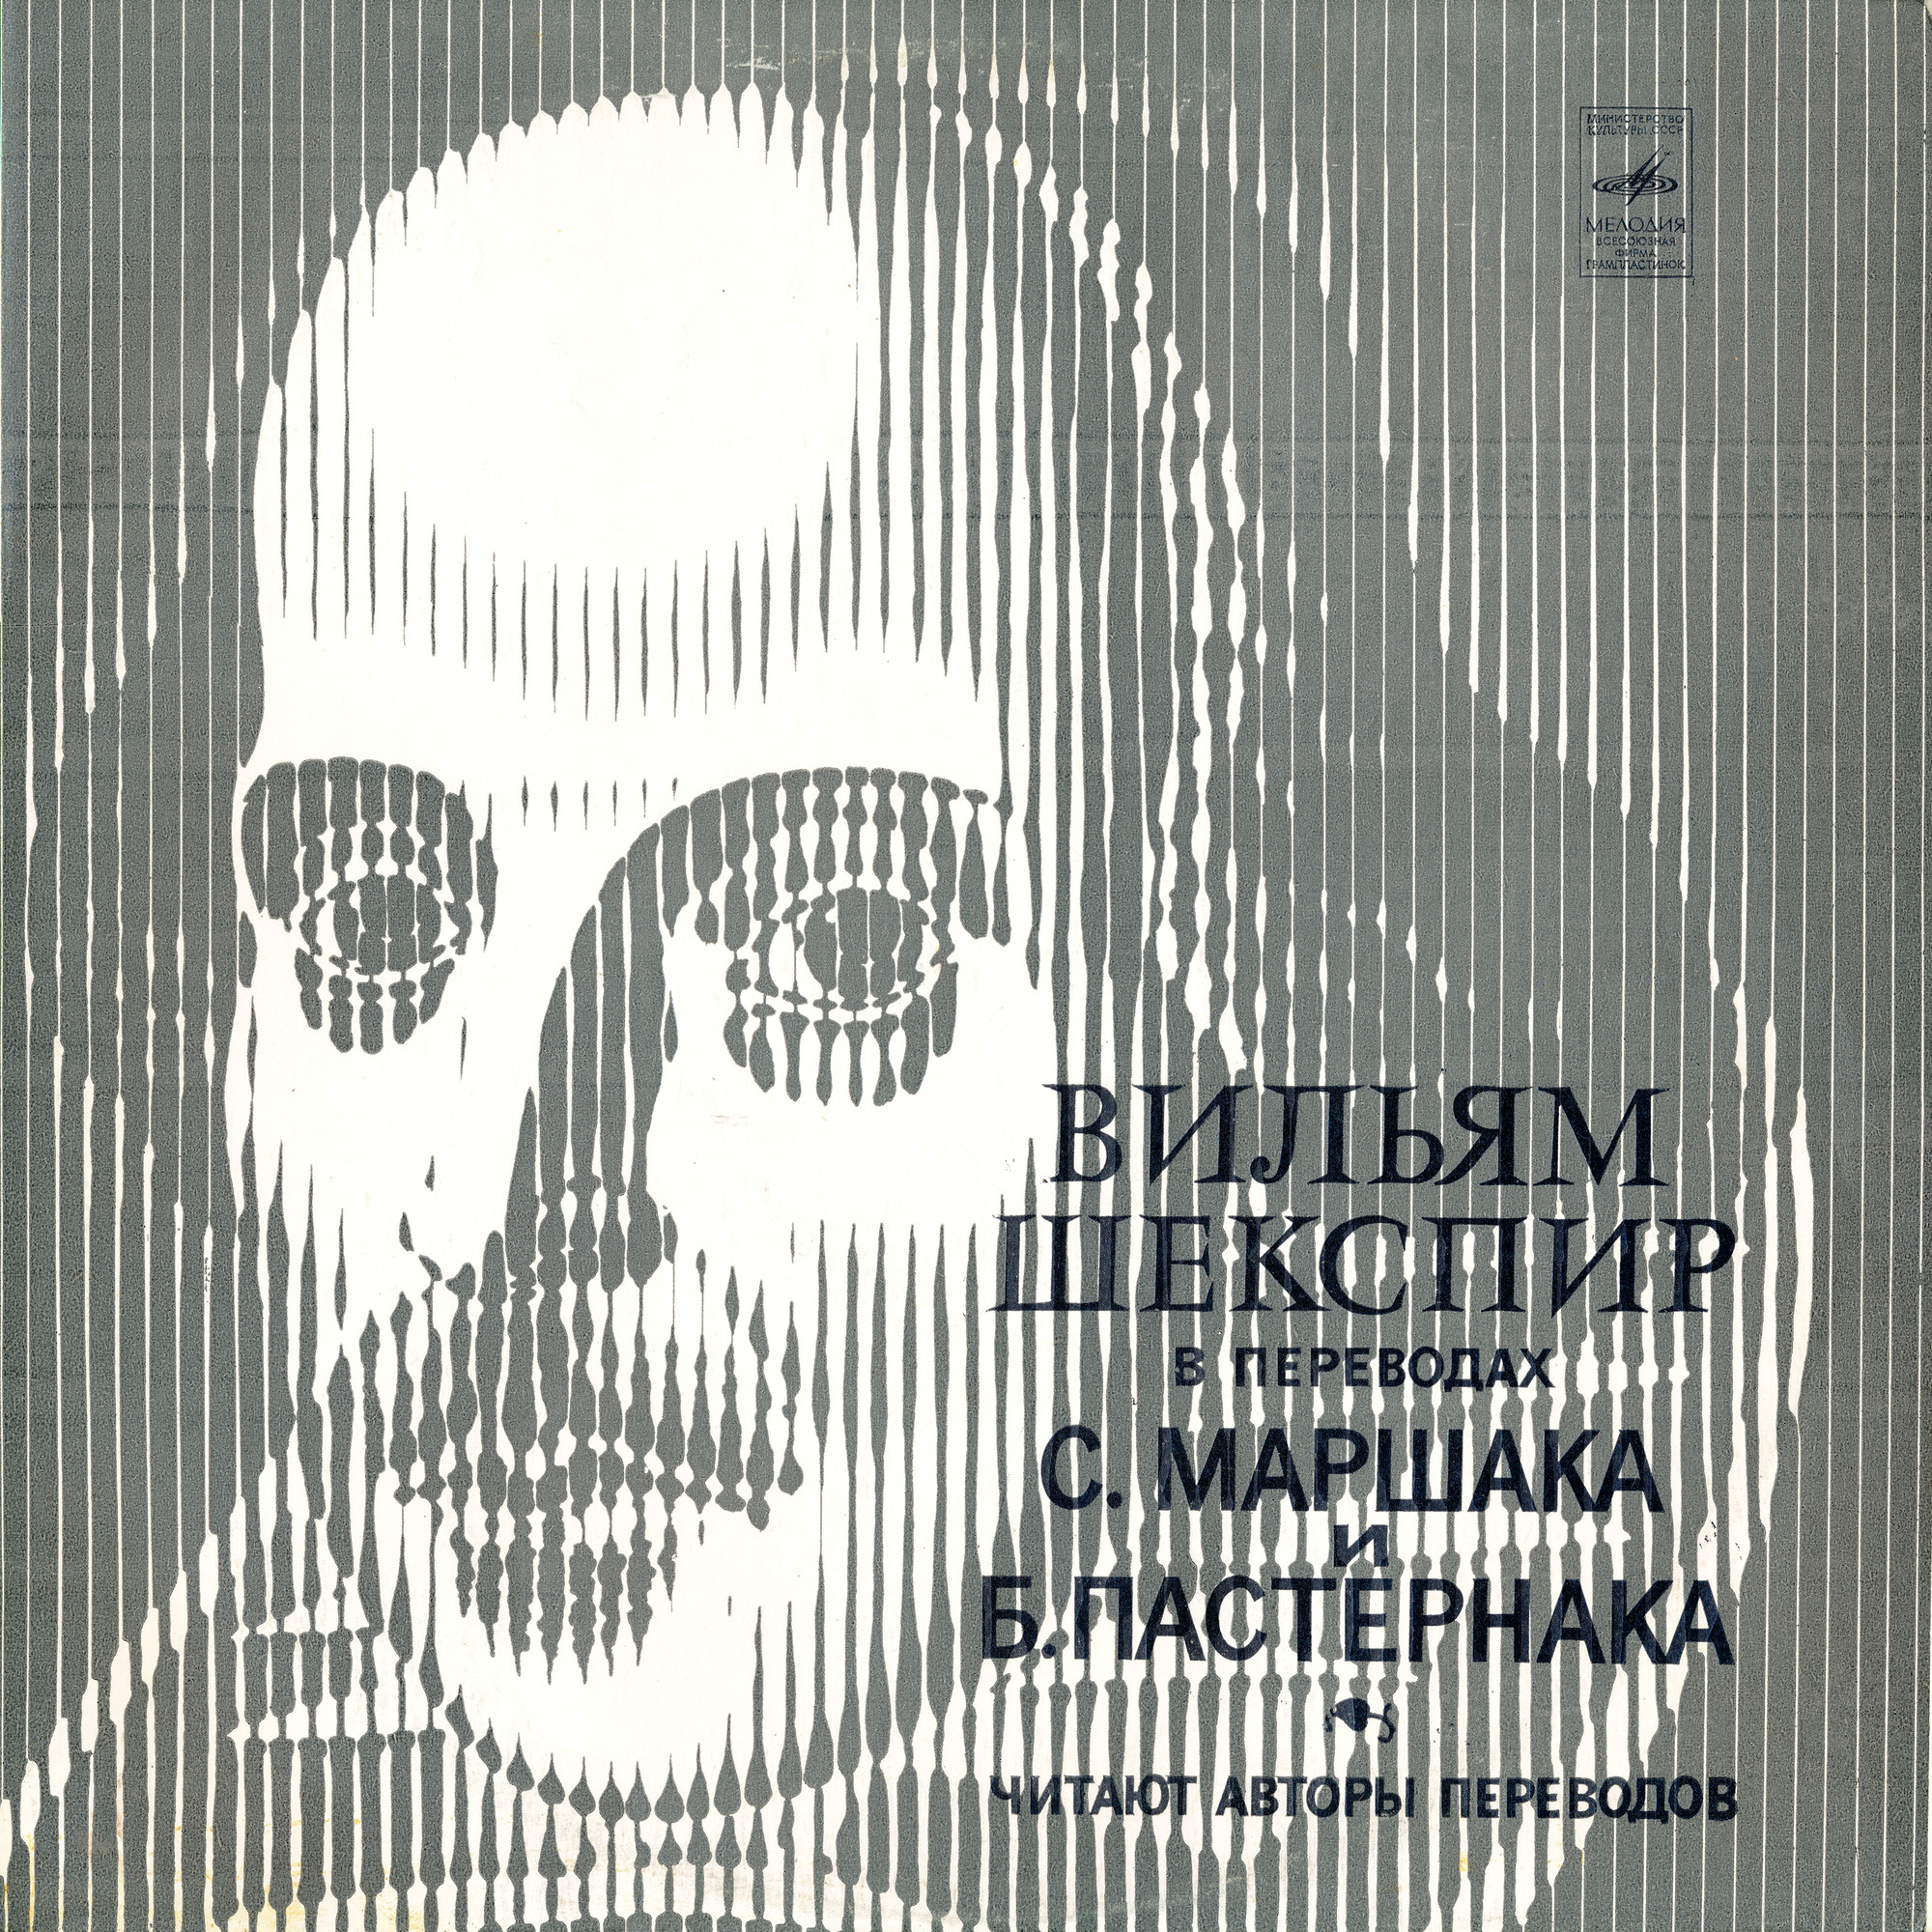 «Вильям Шекспир в переводах С. Маршака и Б. Пастернака»